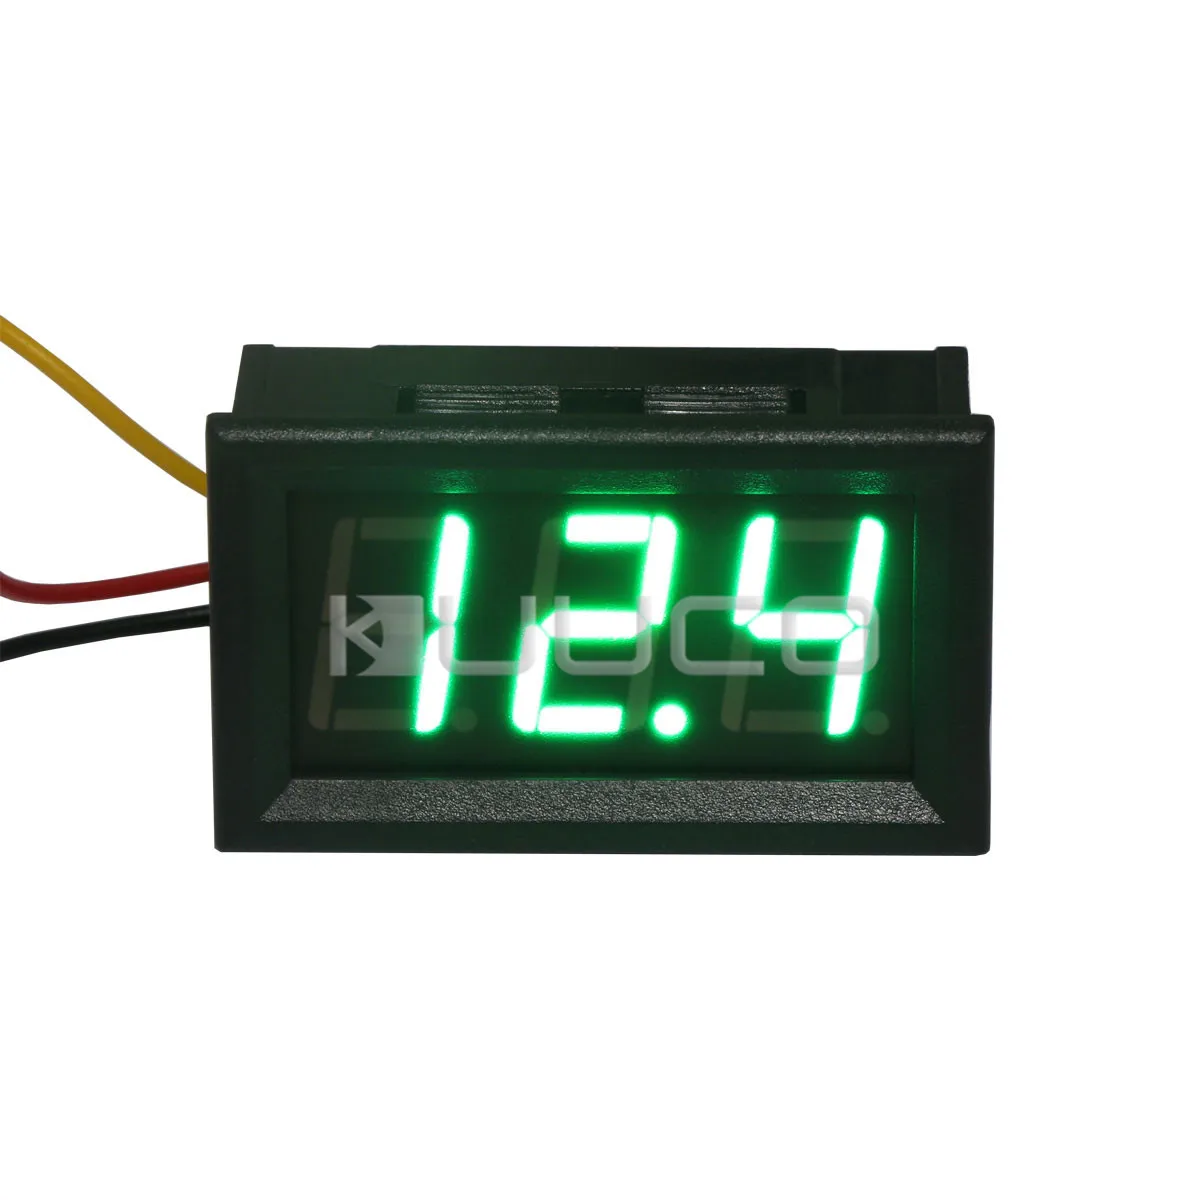 5pcs DC 0-100V Digital Voltmeter Panel Meter LED Red Voltage Power Monitor s889 